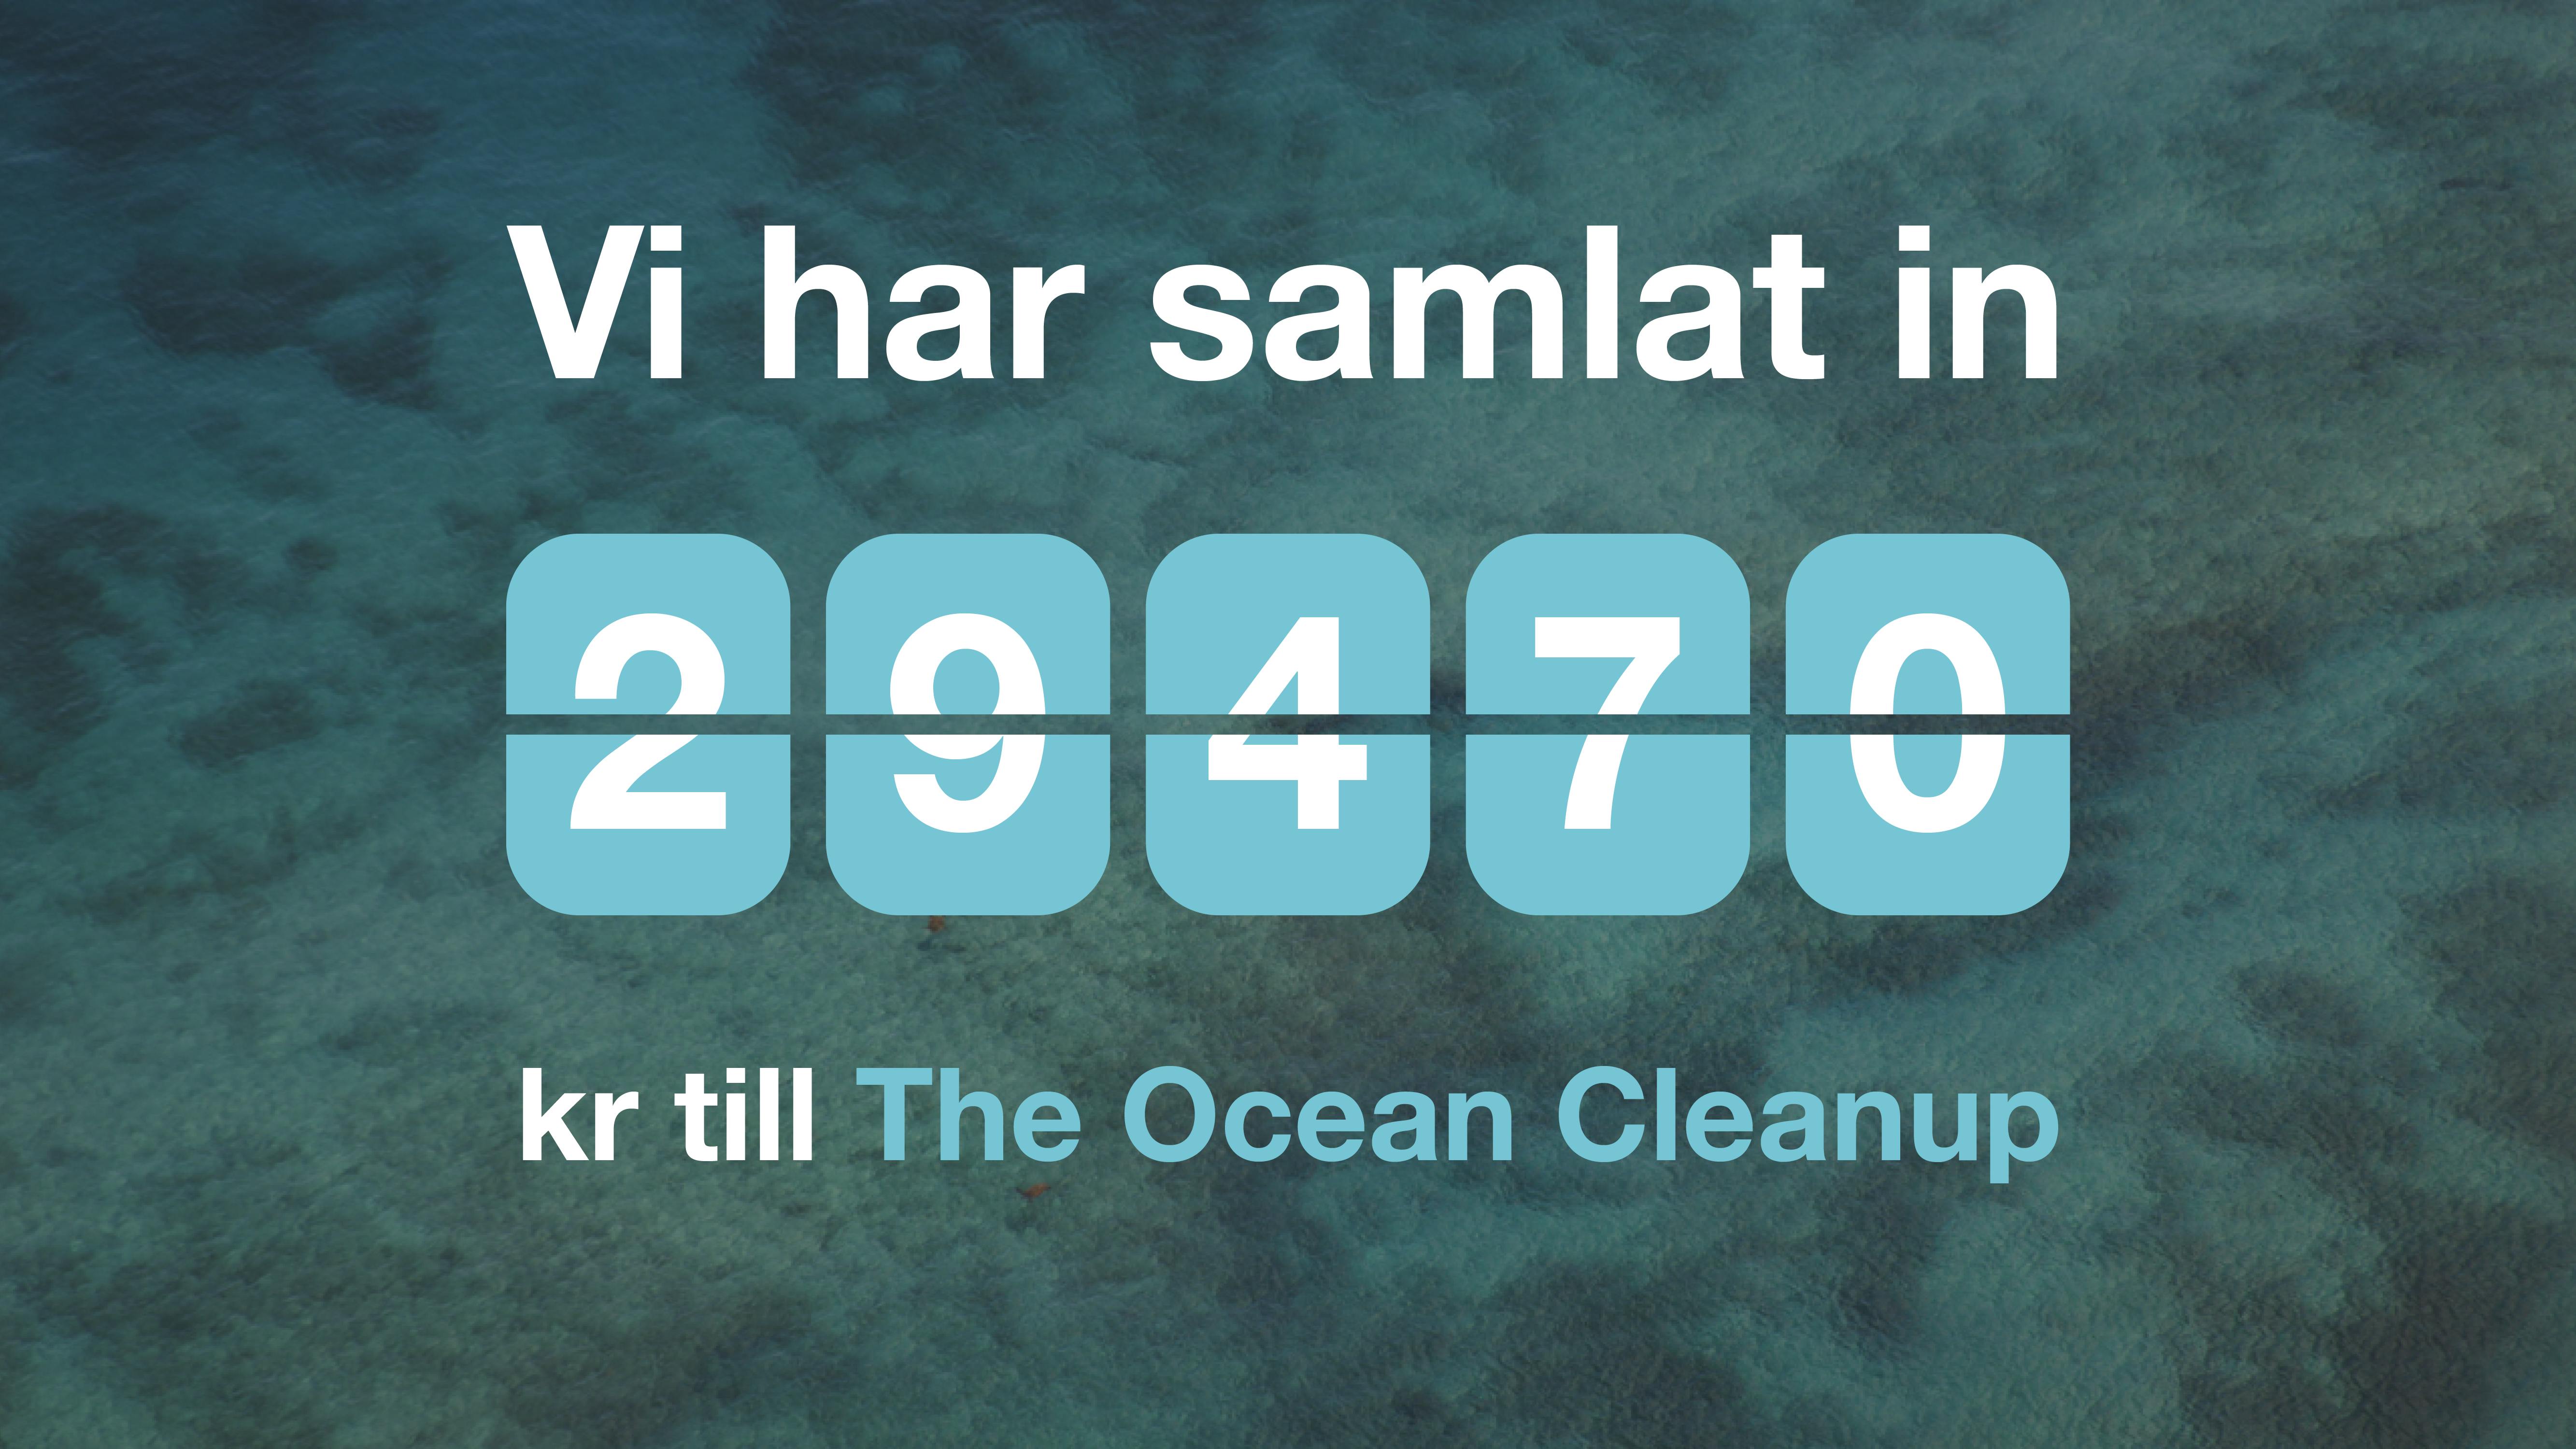 Vi har samlat in 29470 kr till The Ocean Cleanup